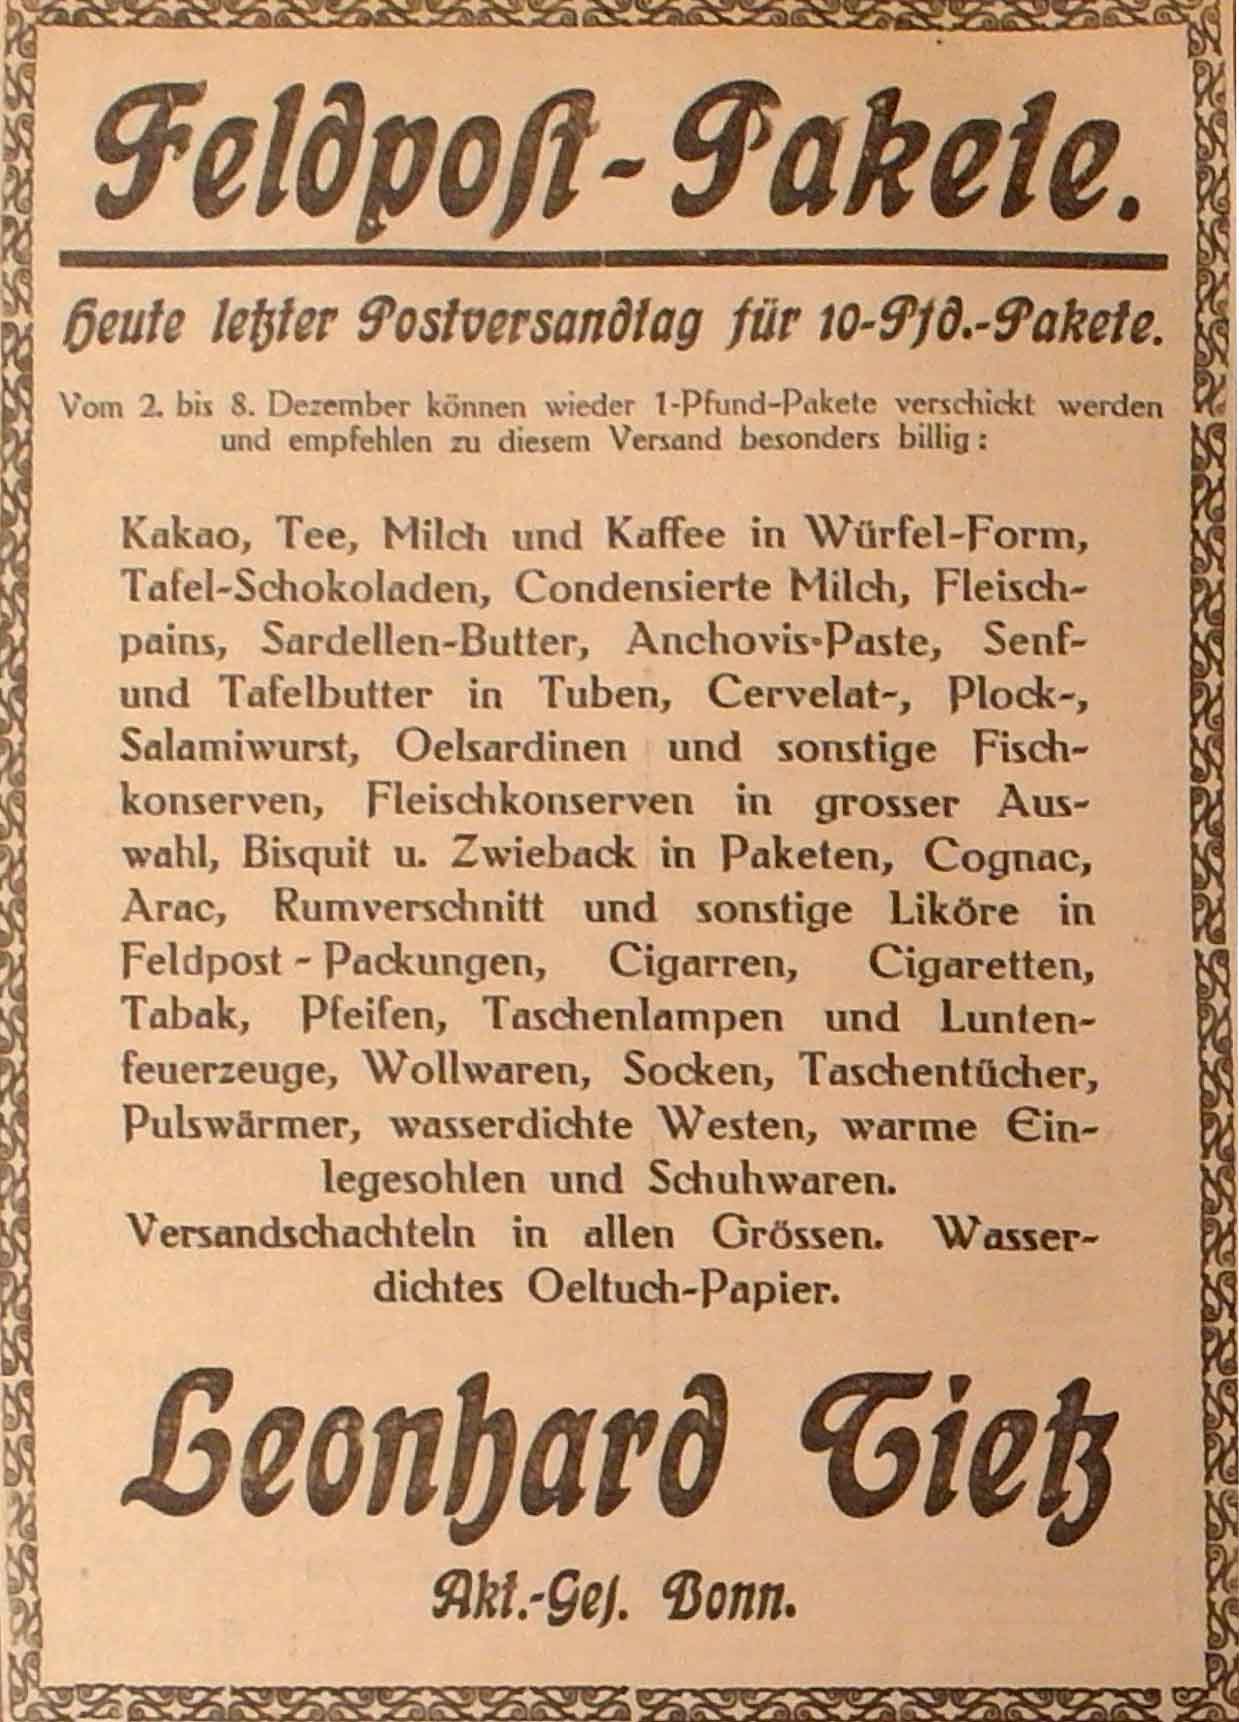 Anzeige im General-Anzeiger vom 30. November 1914